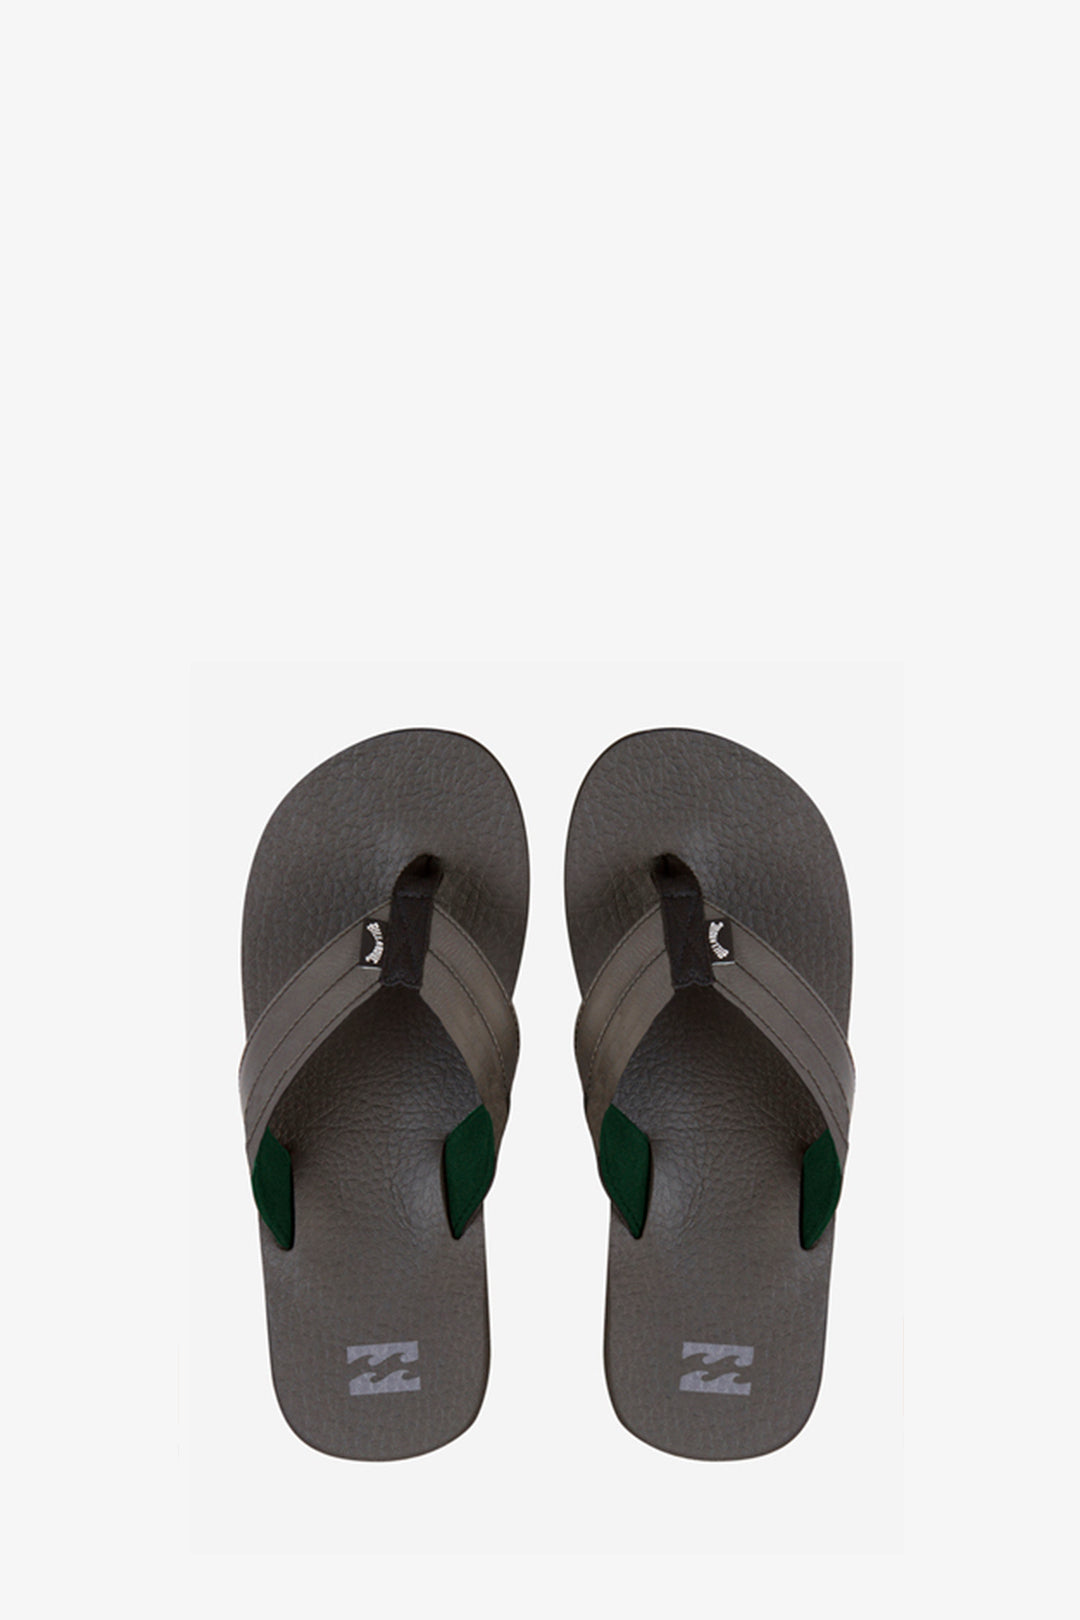 Billabong sandal in Black color